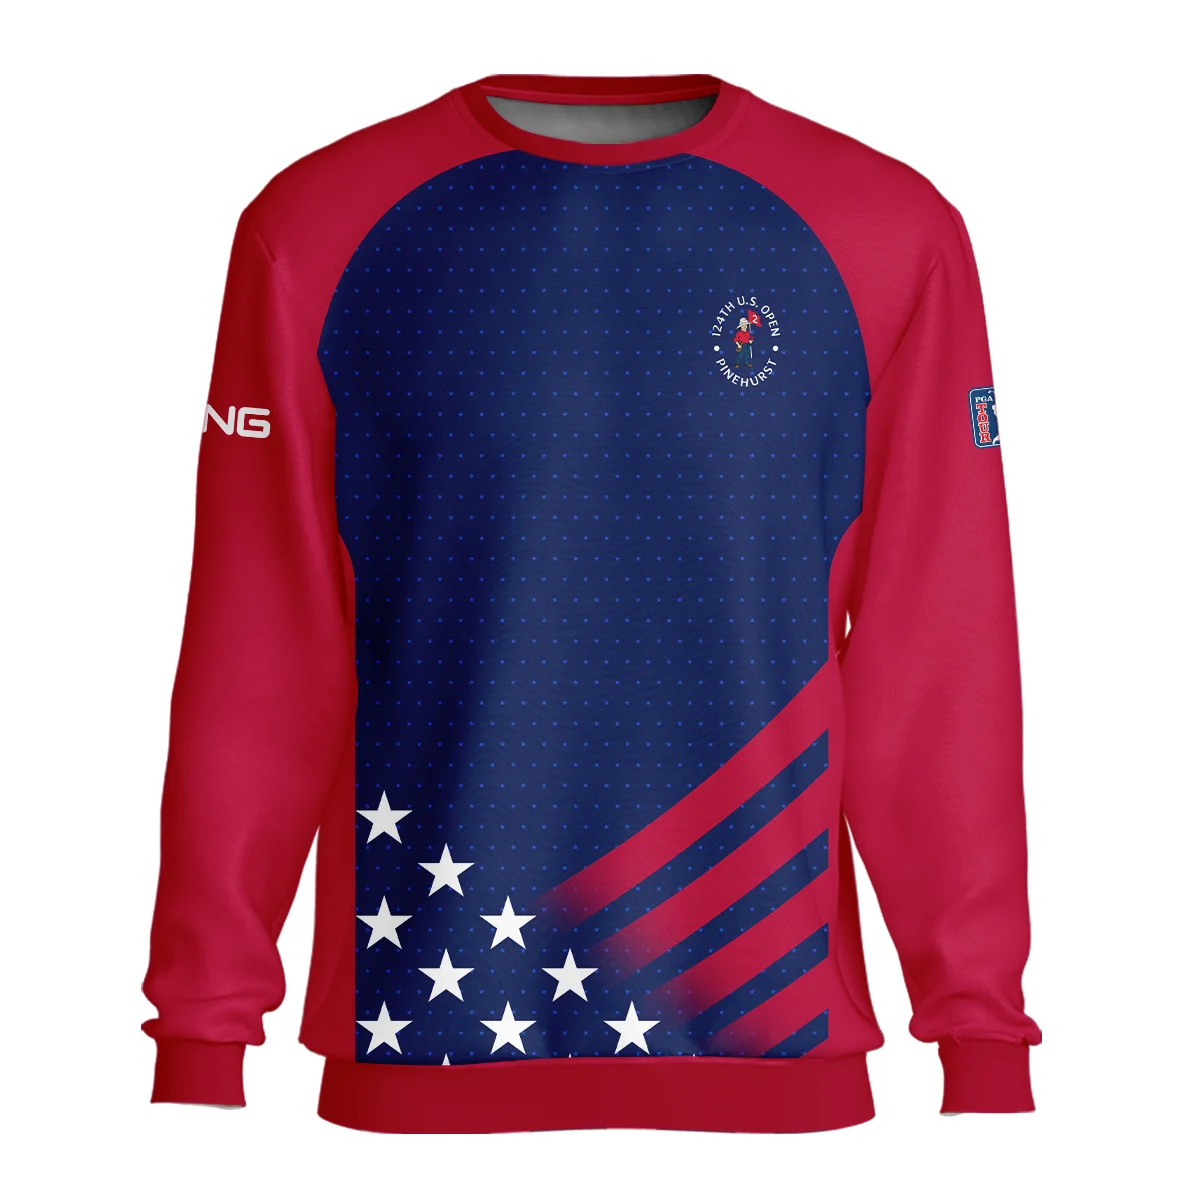 Ping 124th U.S. Open Pinehurst Star White Dark Blue Red Background Unisex Sweatshirt Style Classic Sweatshirt